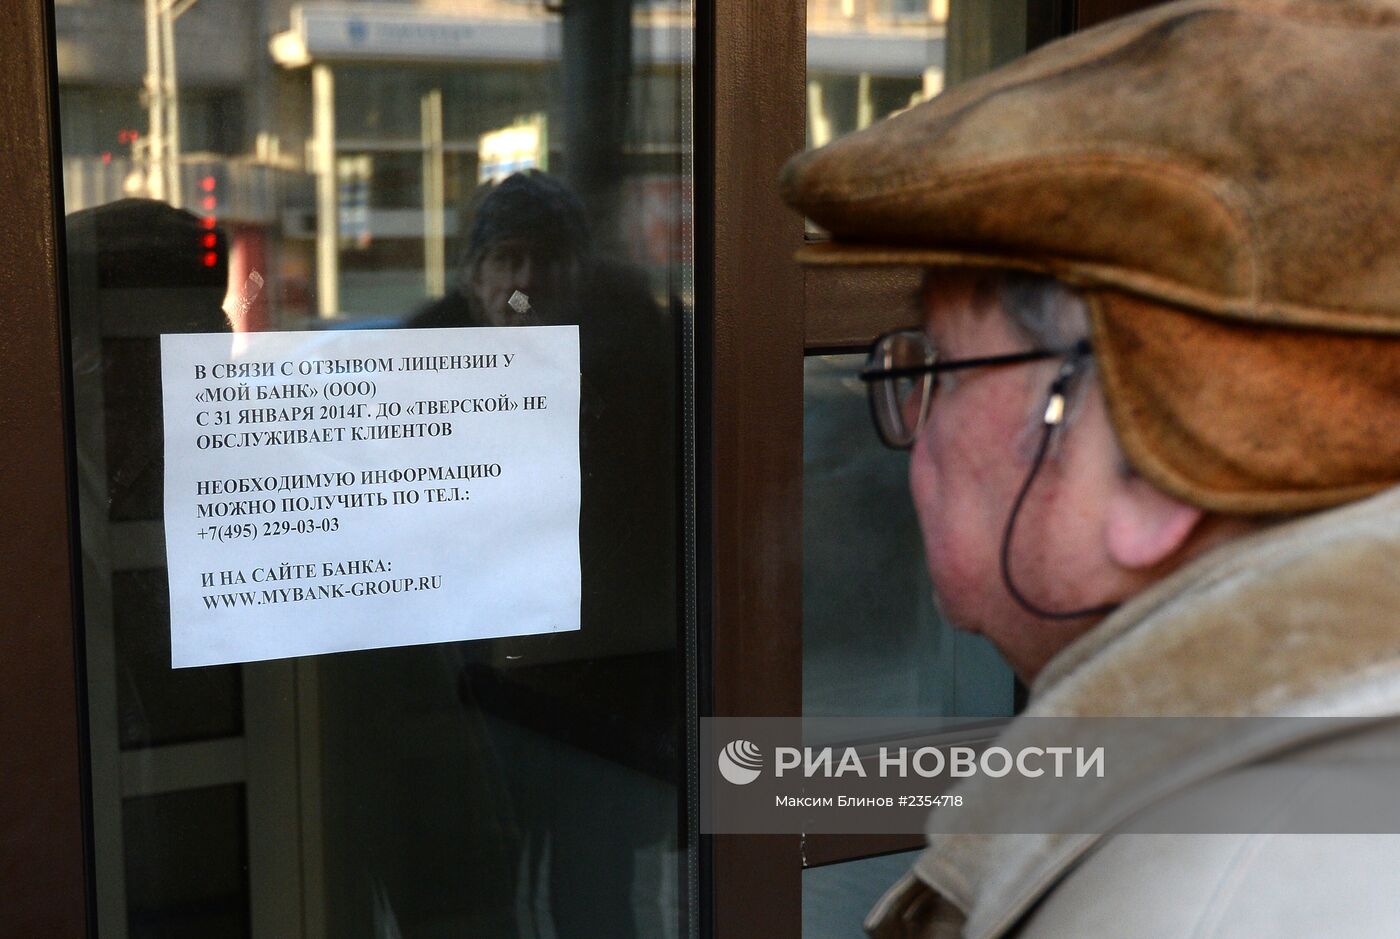 Центробанк России отозвал лицензию у ООО "Мой банк"